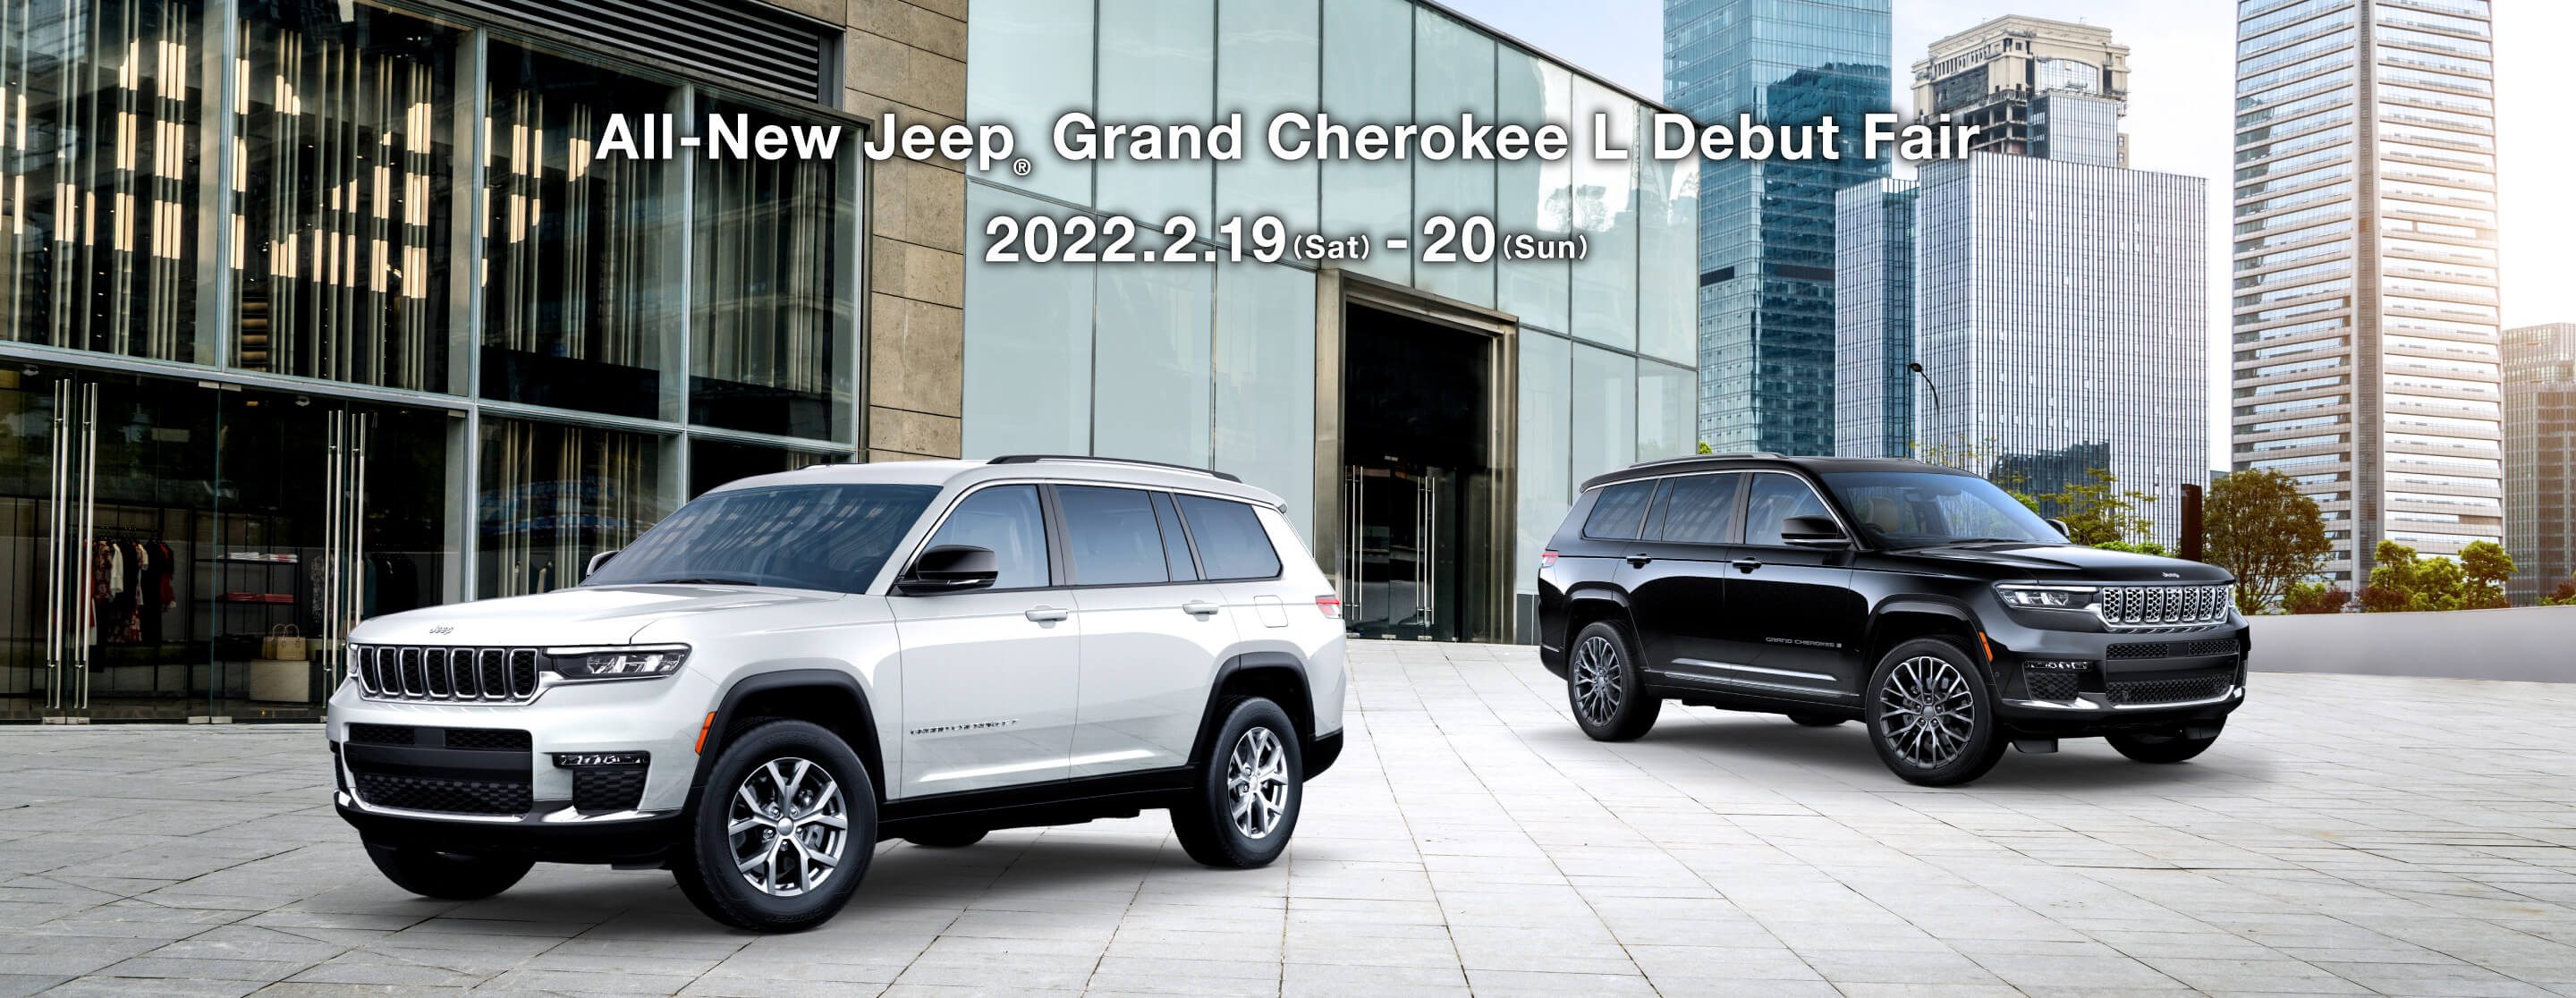 ジープ広島西　All-New Jeep Grand Cherokee L Debut Fair  2.19(sat) ≫ 20(sun)